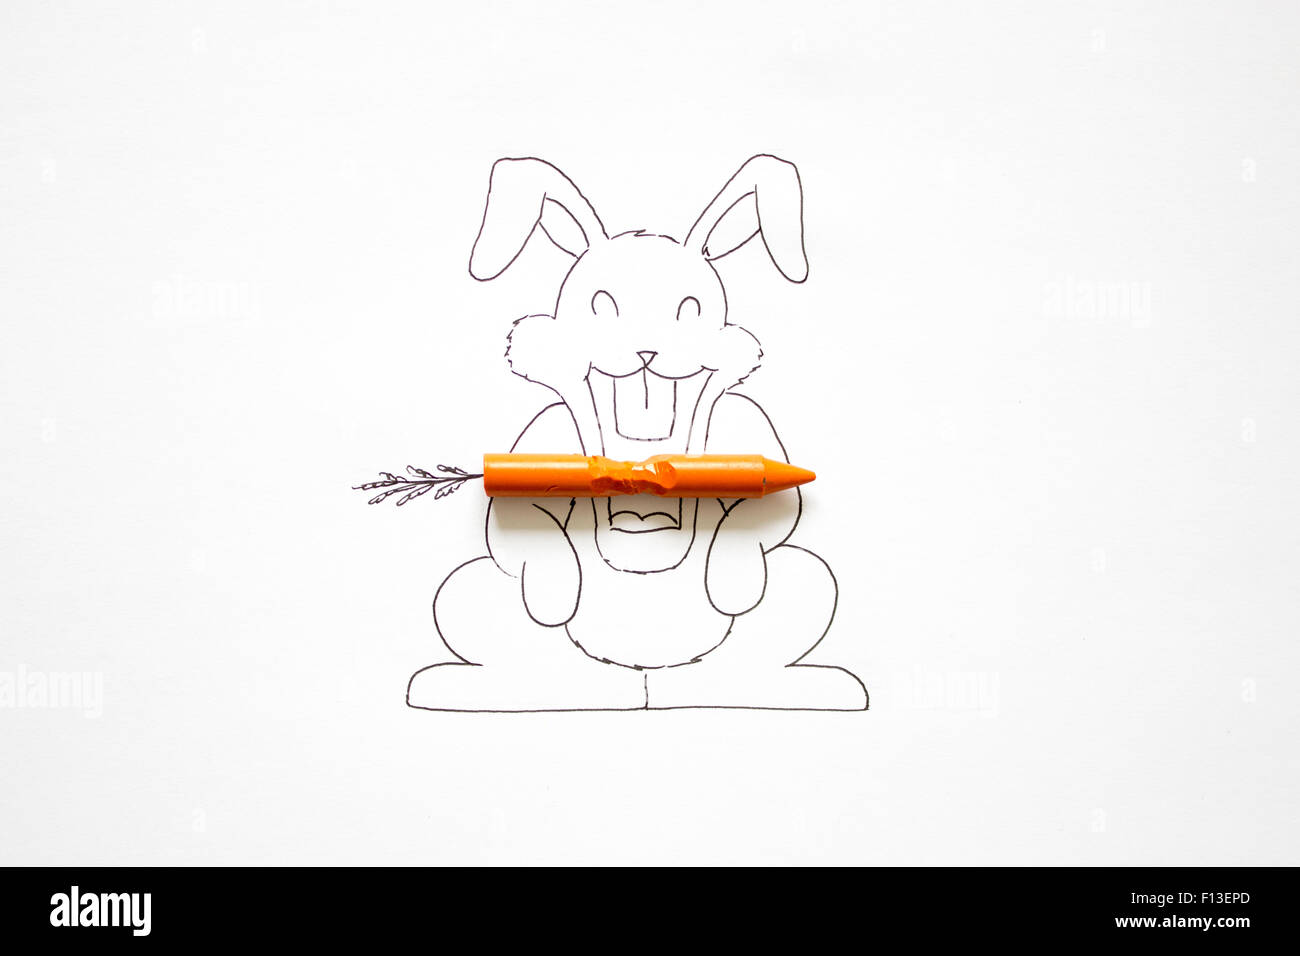 Disegno concettuale di un coniglietto coniglio a mangiare una carota Foto Stock